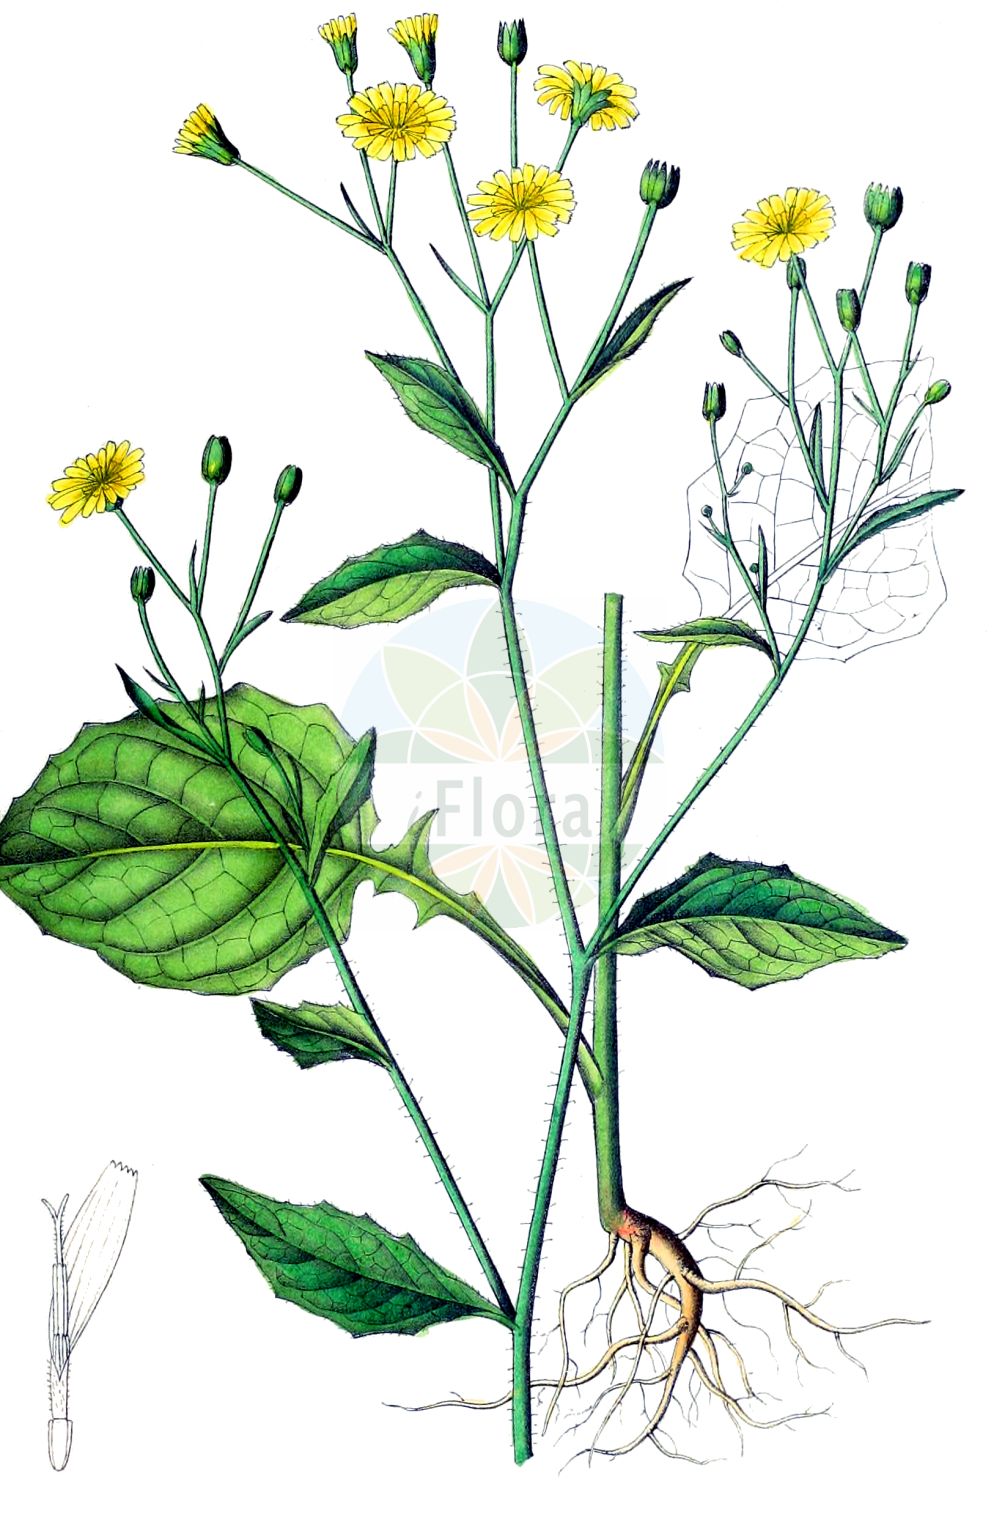 Historische Abbildung von Lapsana communis (Gewöhnlicher Rainkohl - Nipplewort). Das Bild zeigt Blatt, Bluete, Frucht und Same. ---- Historical Drawing of Lapsana communis (Gewöhnlicher Rainkohl - Nipplewort). The image is showing leaf, flower, fruit and seed.(Lapsana communis,Gewöhnlicher Rainkohl,Nipplewort,Lapsana communis,Lapsana glandulosa,Lapsana pubescens,Gewoehnlicher Rainkohl,Rainkohl,Nipplewort,Common Nipplewort,Lapsana,Rainkohl,Nipplewort,Asteraceae,Korbblütengewächse,Daisy family,Blatt,Bluete,Frucht,Same,leaf,flower,fruit,seed,Dietrich (1833-1844))